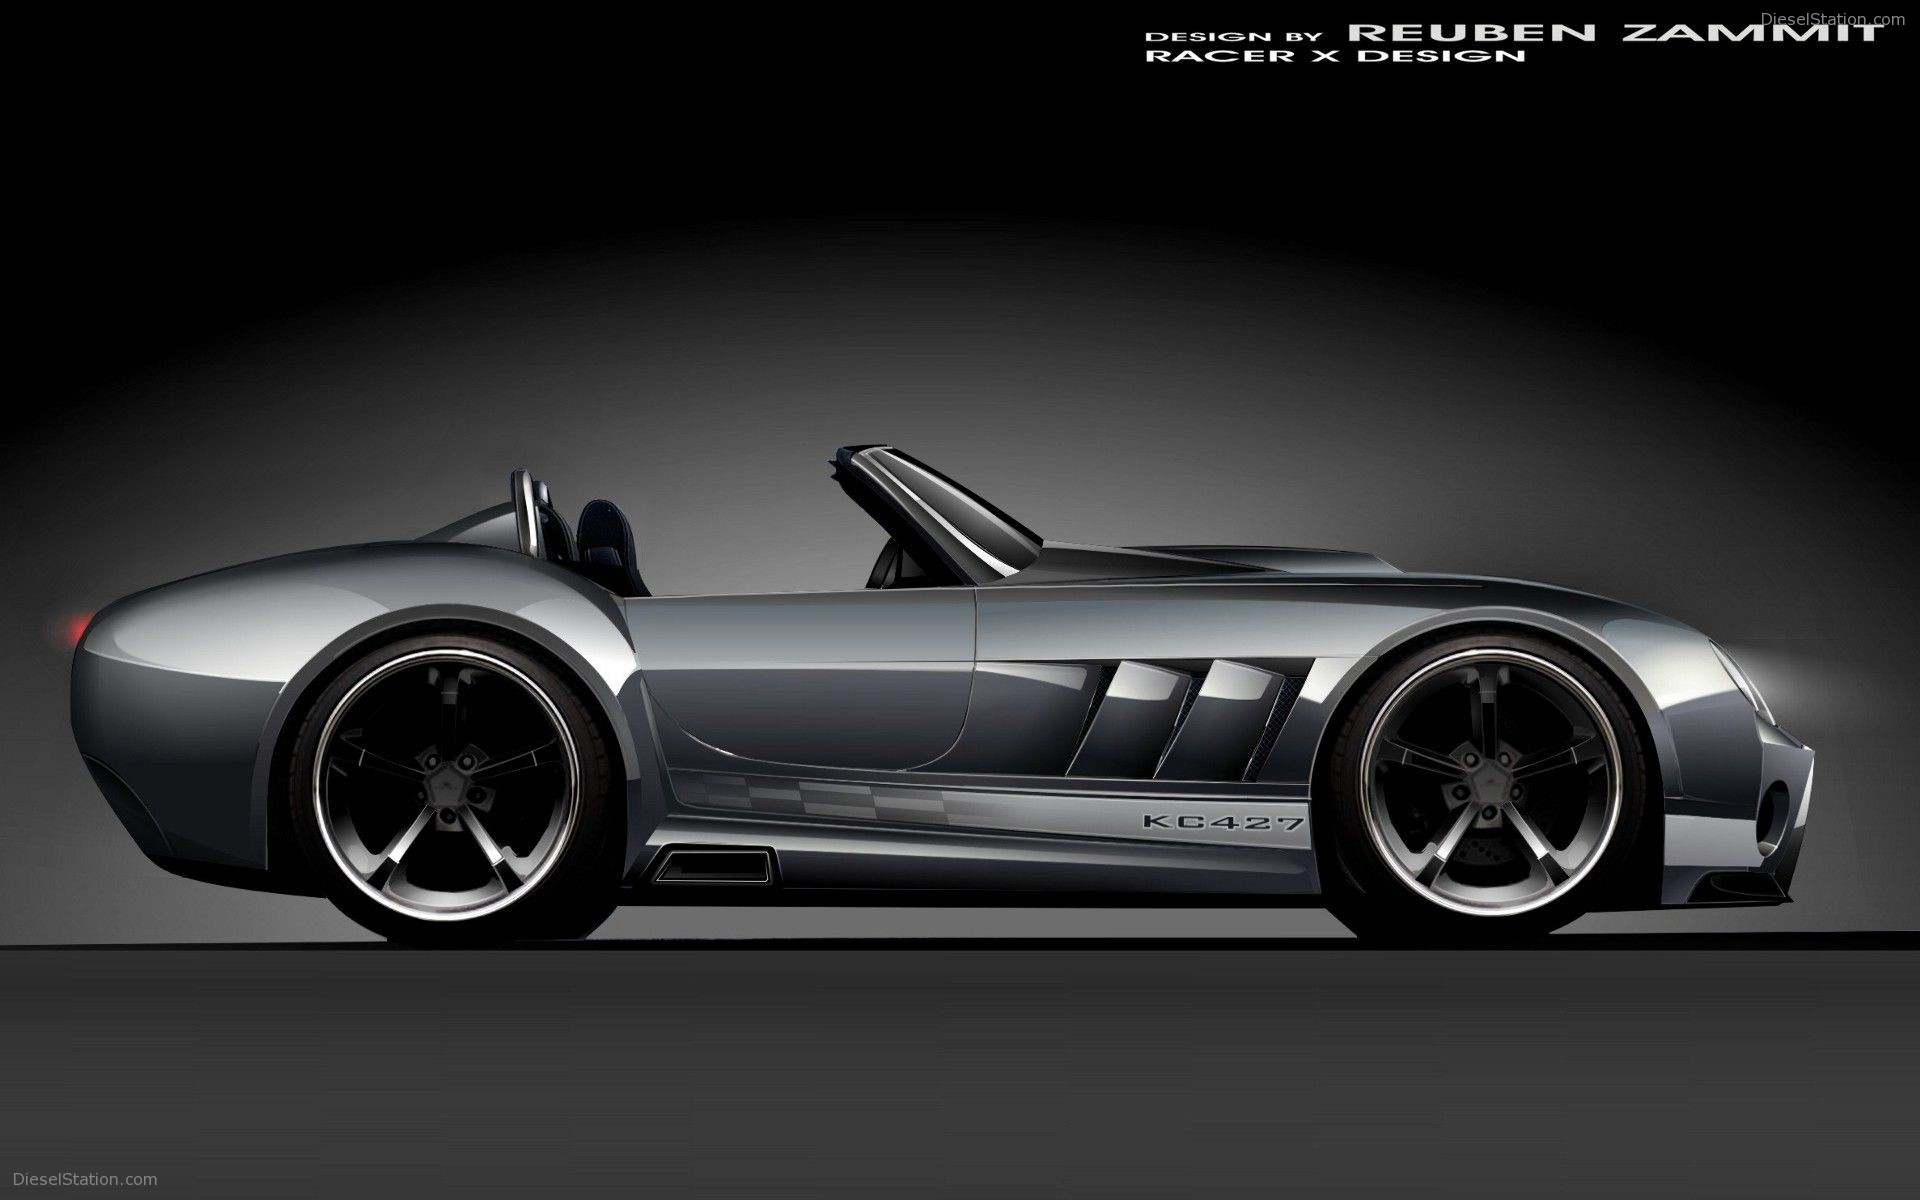 Kc Racer X Design Concept Car Widescreen Exotic Wallpaper